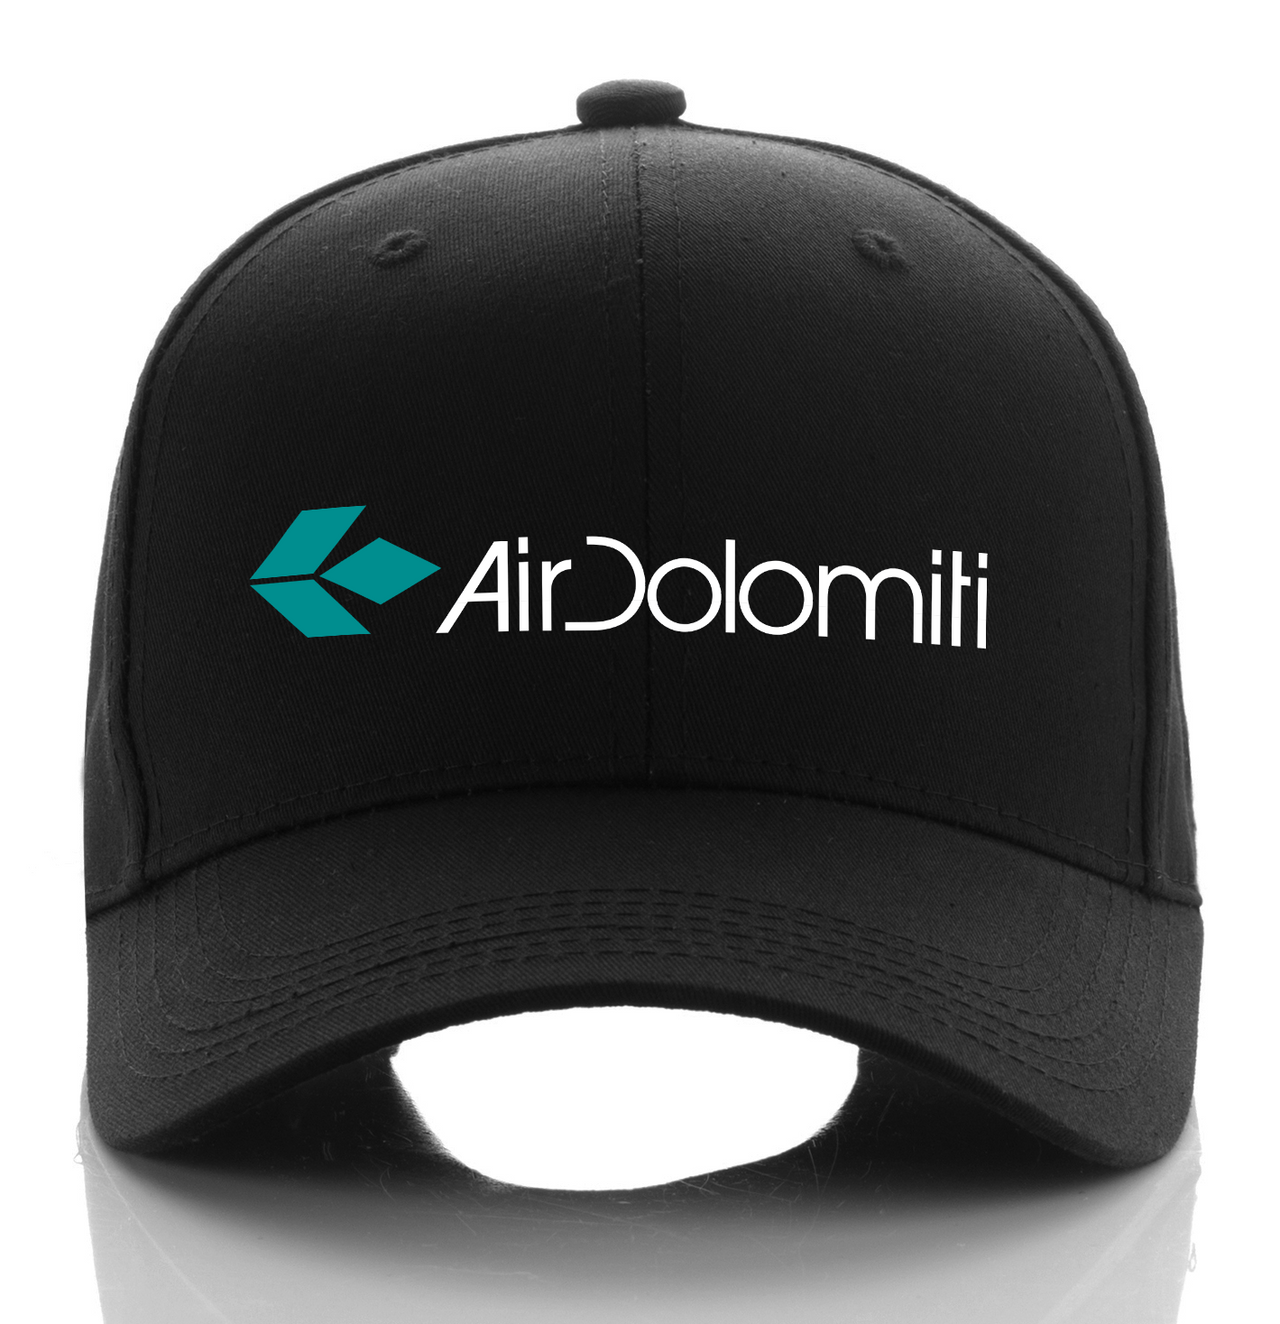 COLOMITI AIRLINE DESIGNED CAP